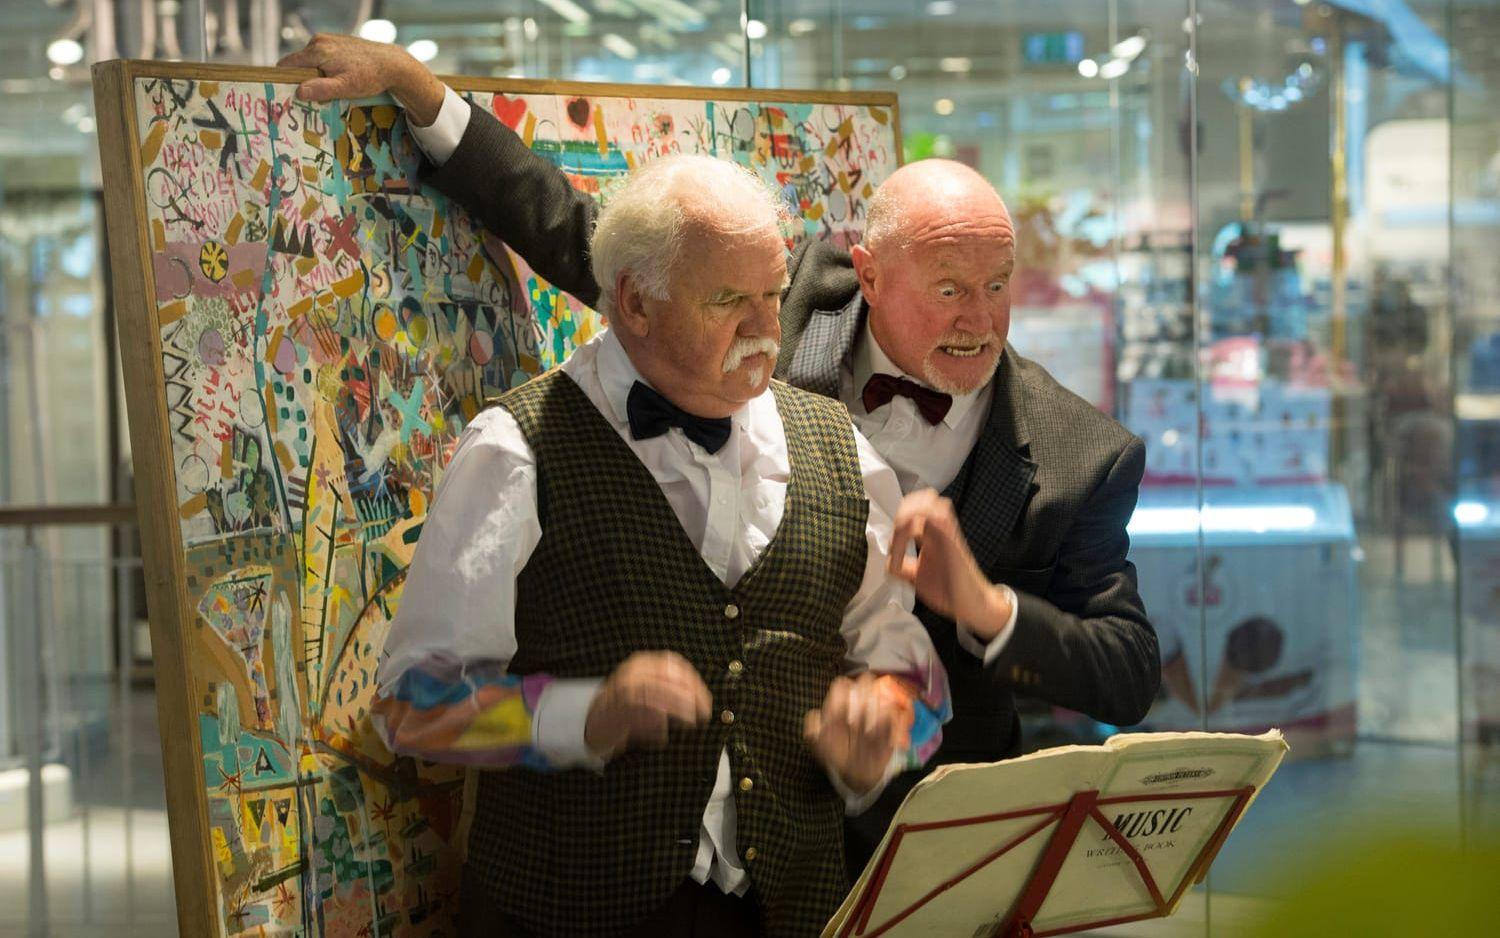 Desperate Men fick hålla sin show ”Slapstick & Slaughter” i Gallerian när regnet stoppade dem från att uppträda på Stora torg. Bild: Johan Persson